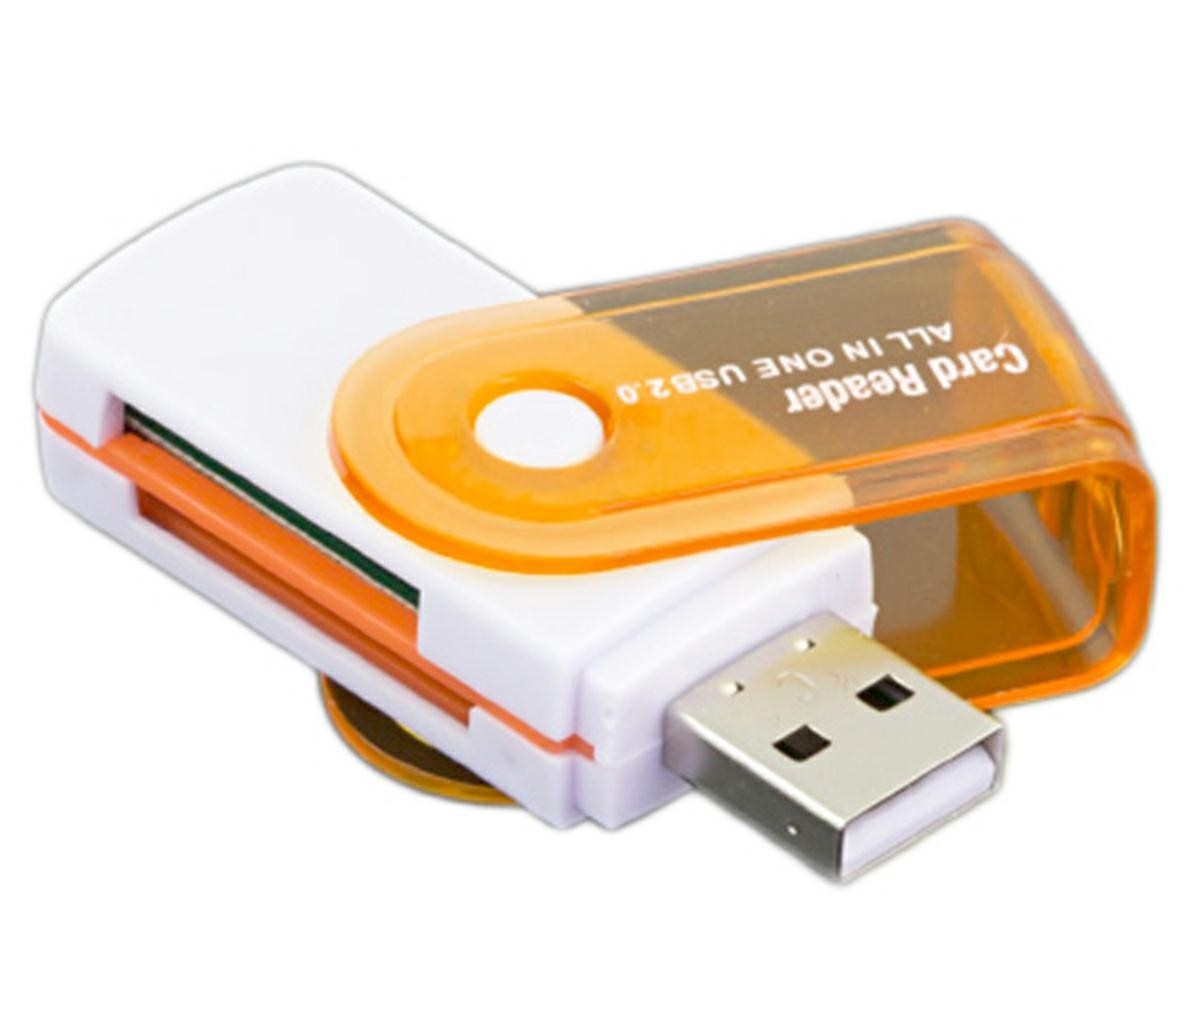 Pro Cart Cititor carduri, usb 2.0, 60 mb/s, alb portocaliu